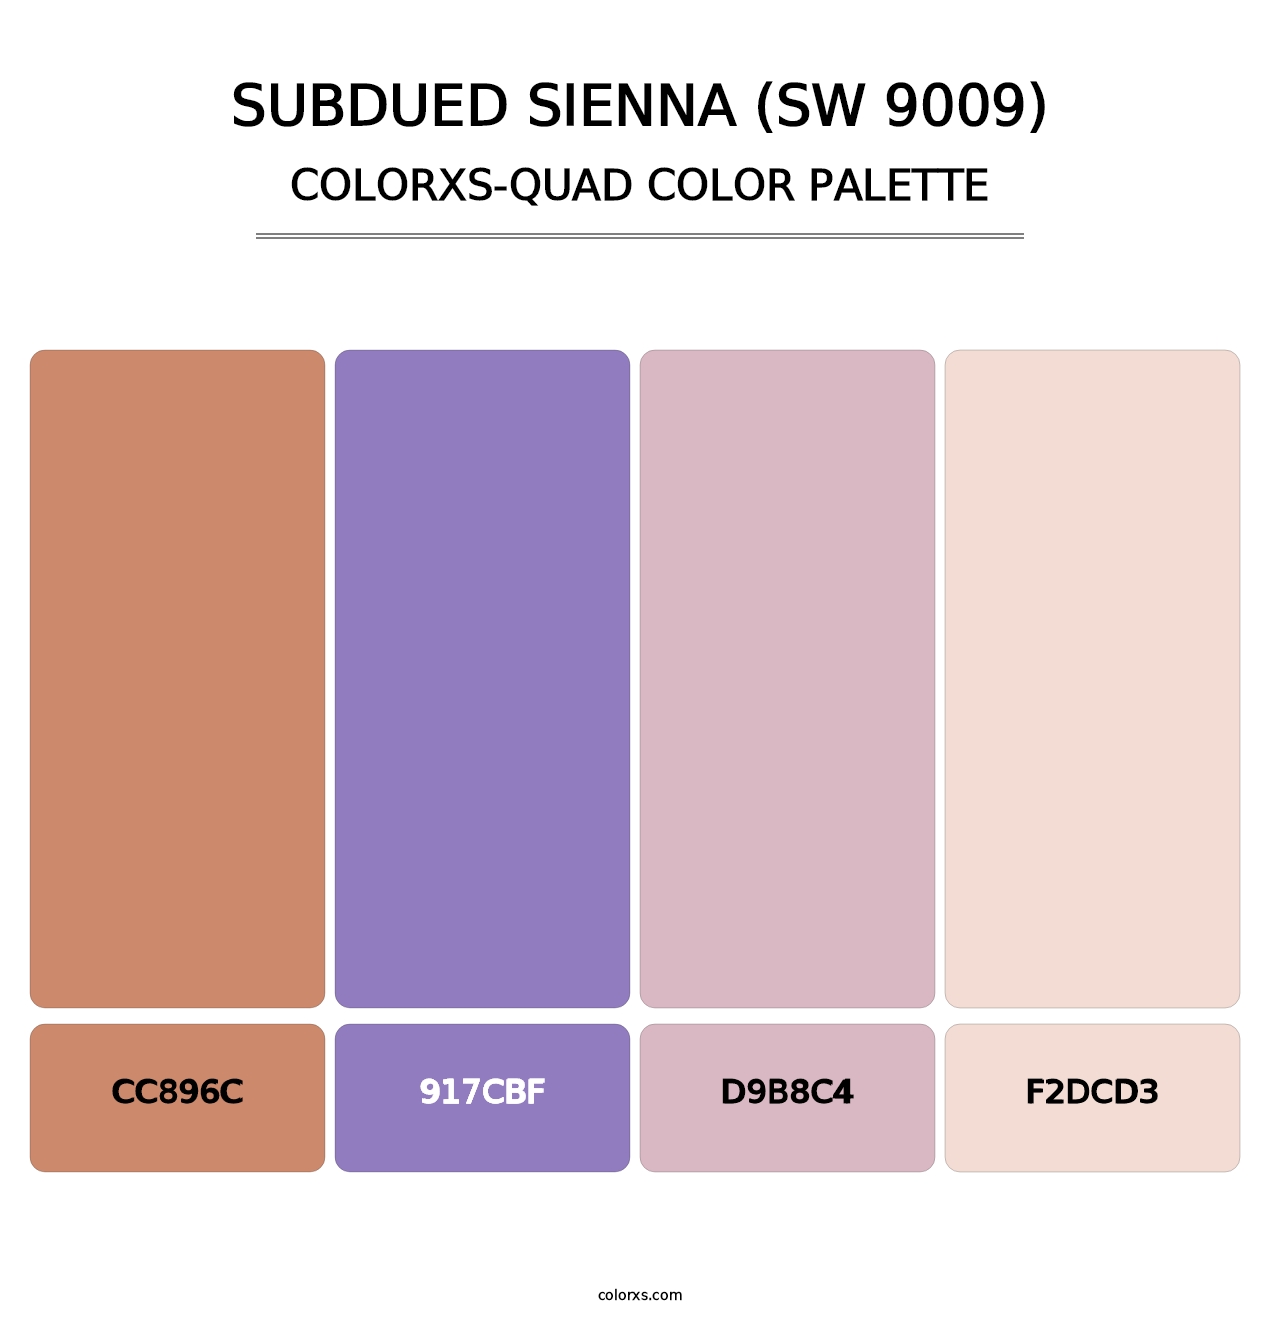 Subdued Sienna (SW 9009) - Colorxs Quad Palette